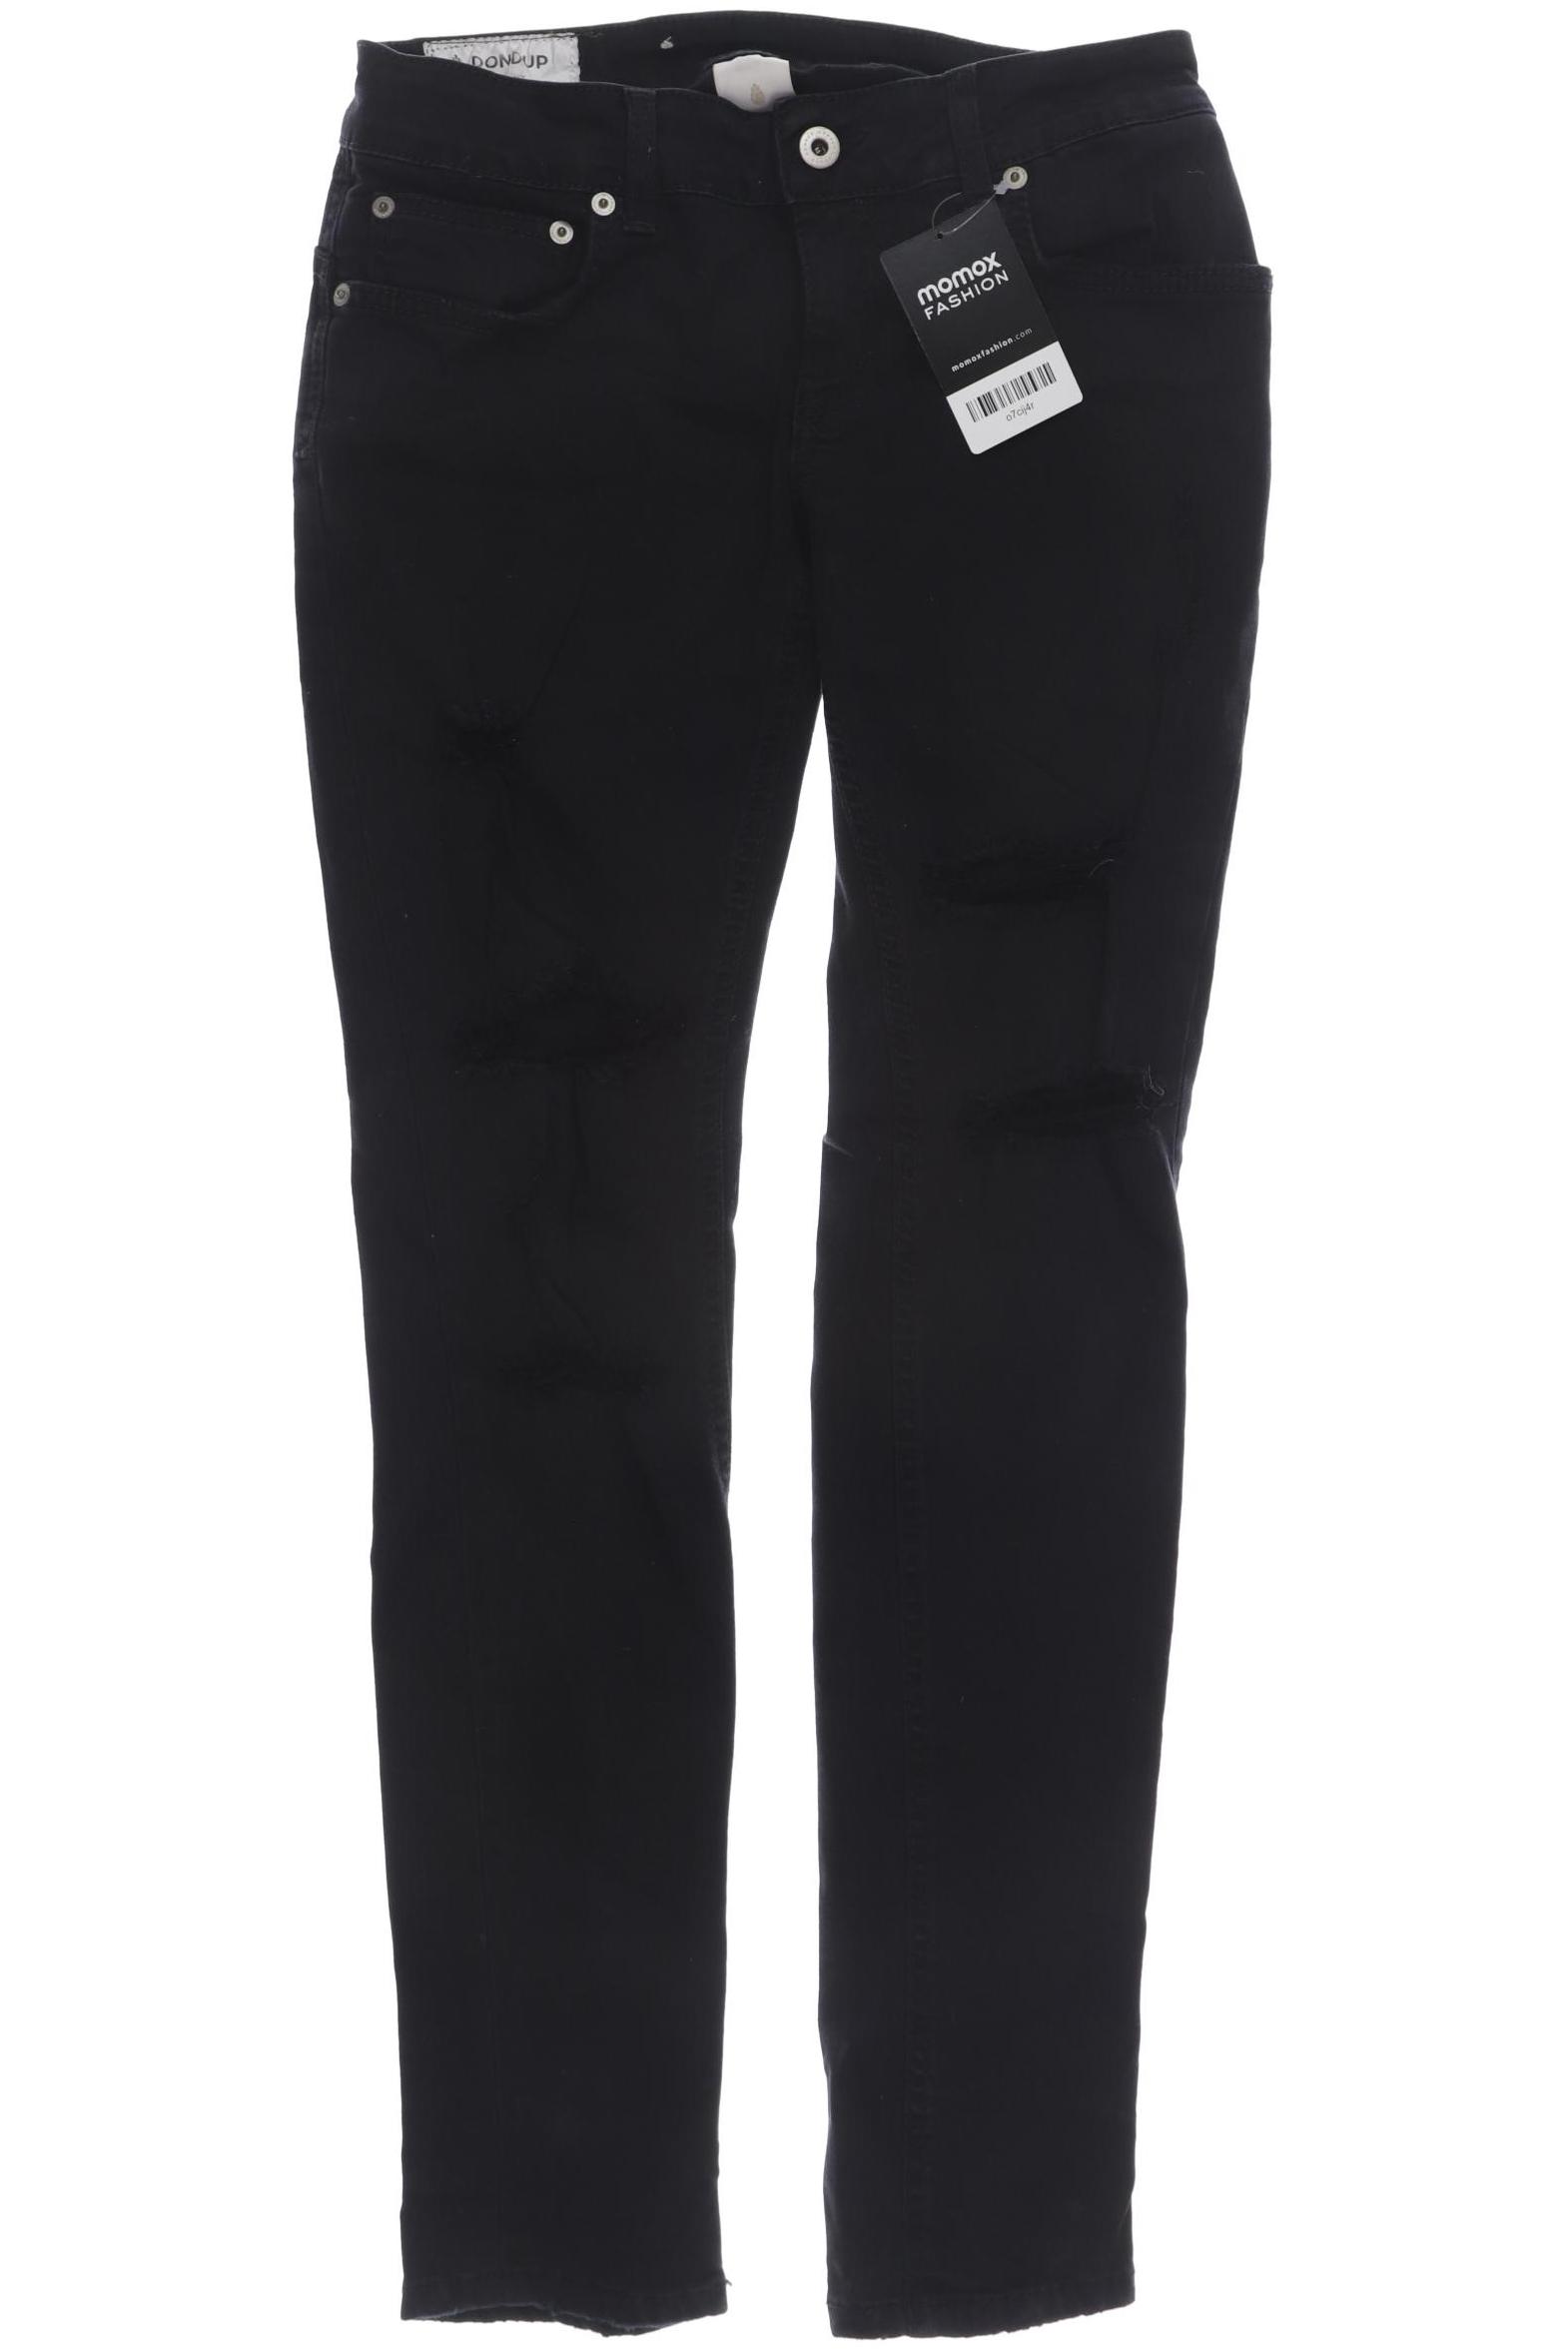 Dondup Damen Jeans, schwarz, Gr. 38 von Dondup